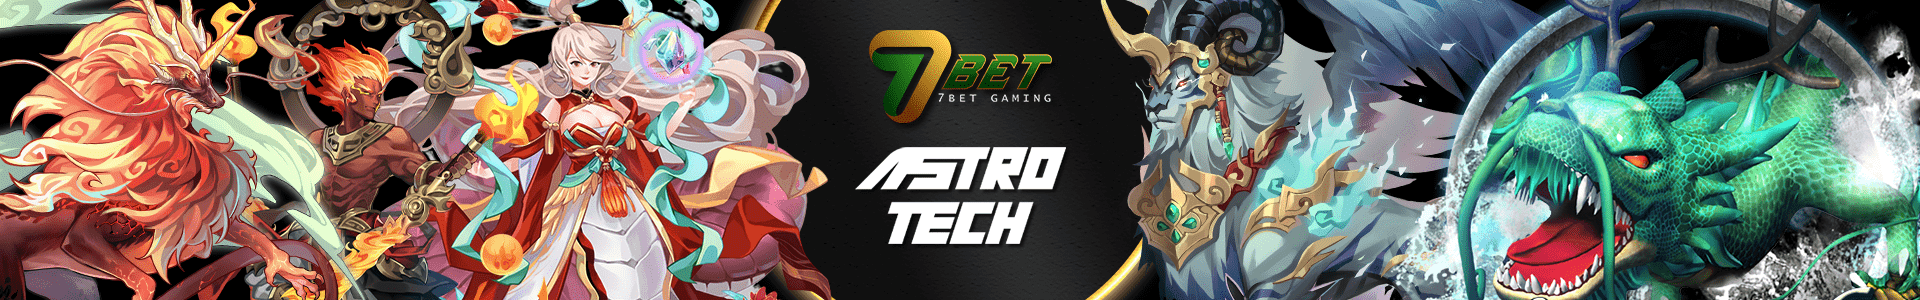 7bet astro tech